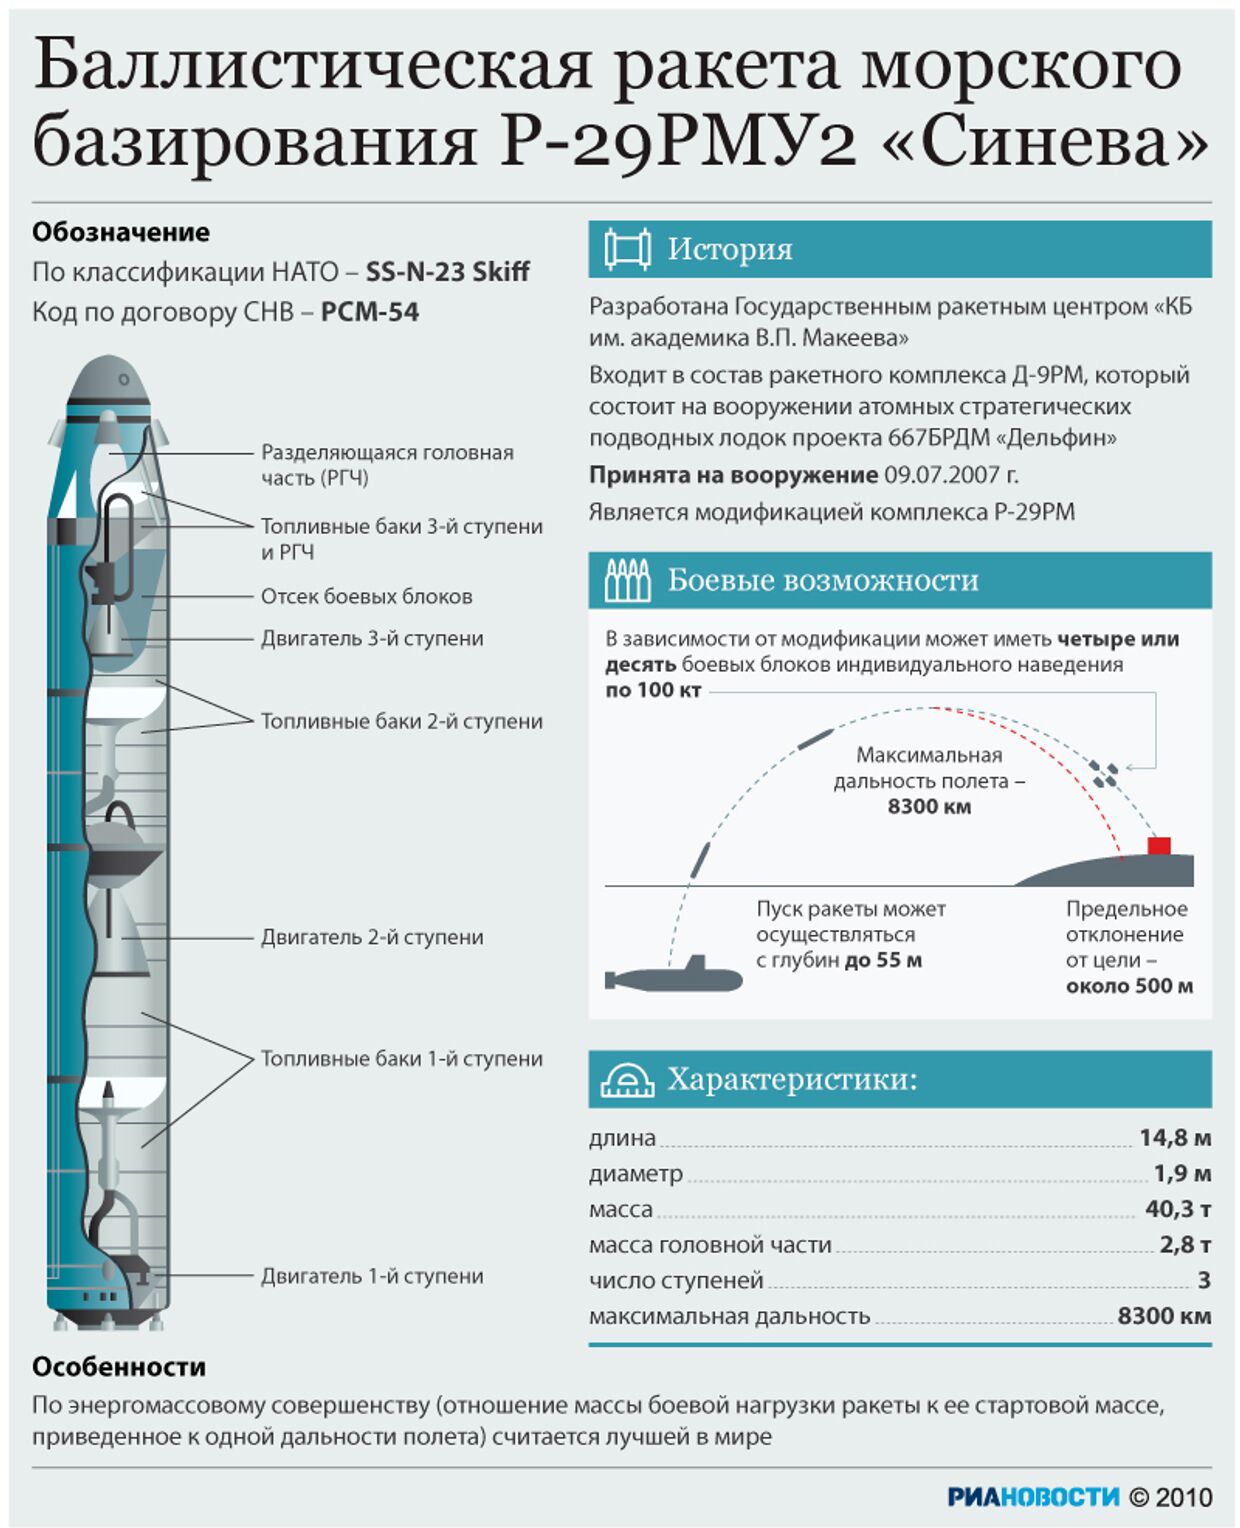 Баллистическая ракета морского базирования Р-29РМУ2 Синева